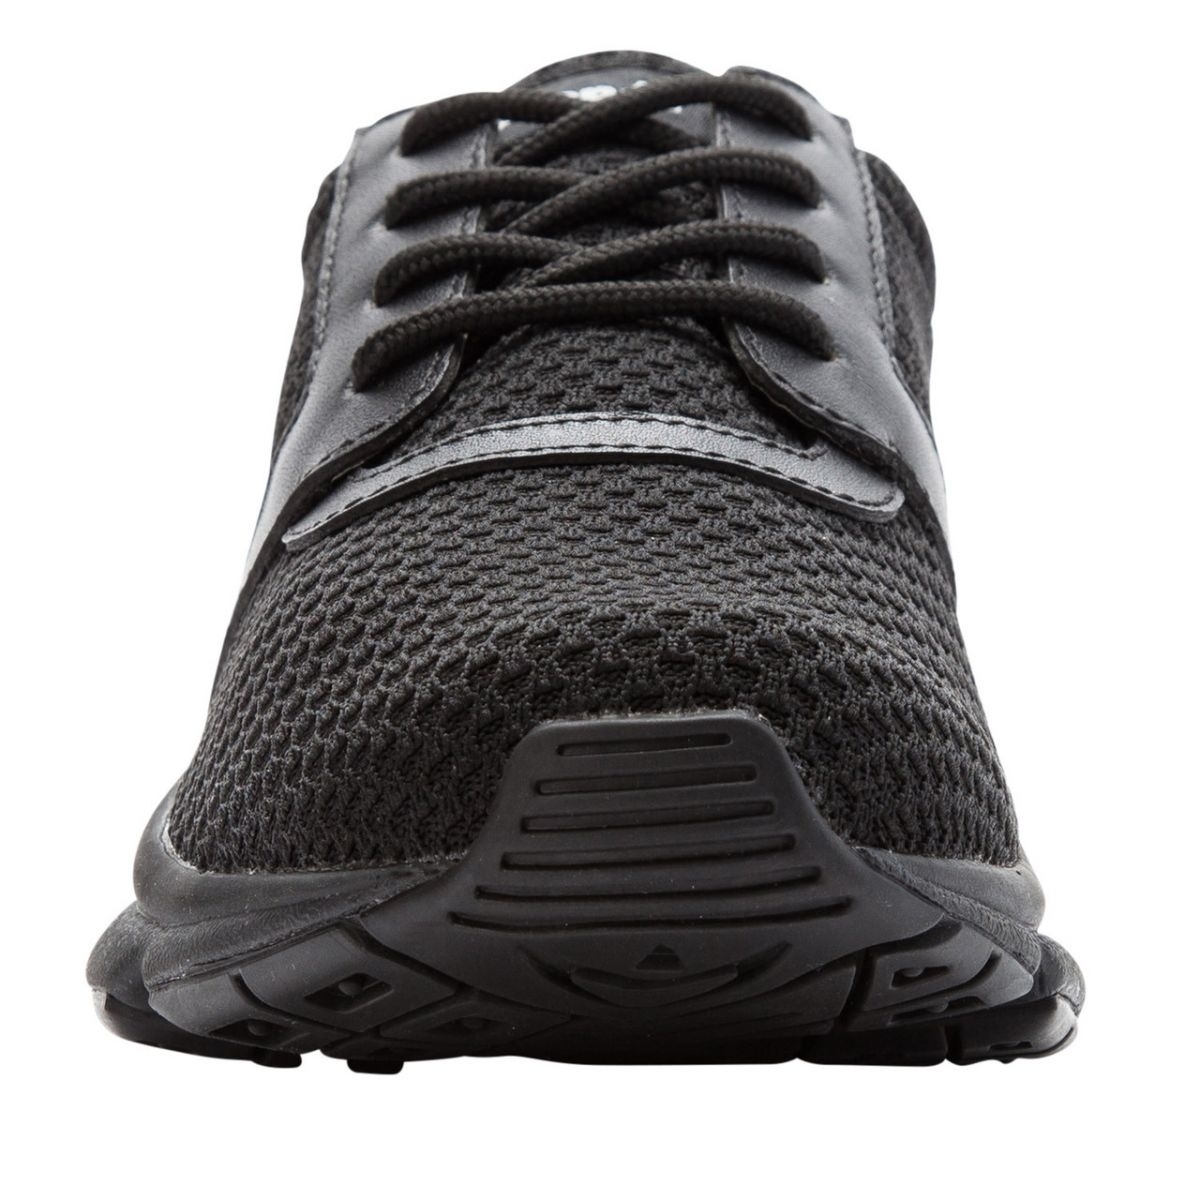 Propet Women's Stability X Walking Shoe Black - WAA032MBLK BLACK - BLACK, 5